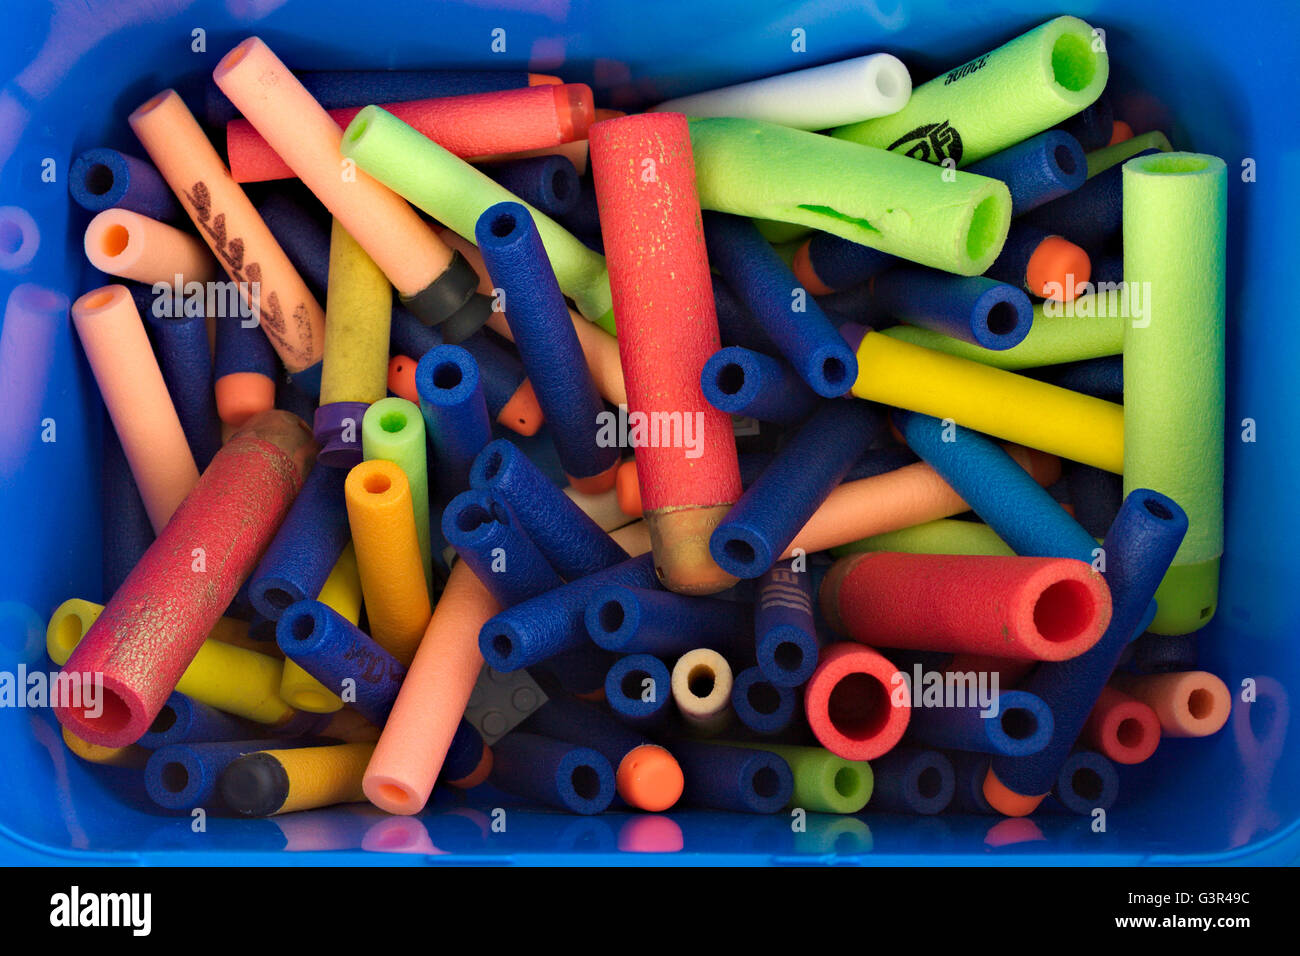 Schaumkanone Spielzeug Nerf dart in mehreren Farben in einer bluebox  Stockfotografie - Alamy